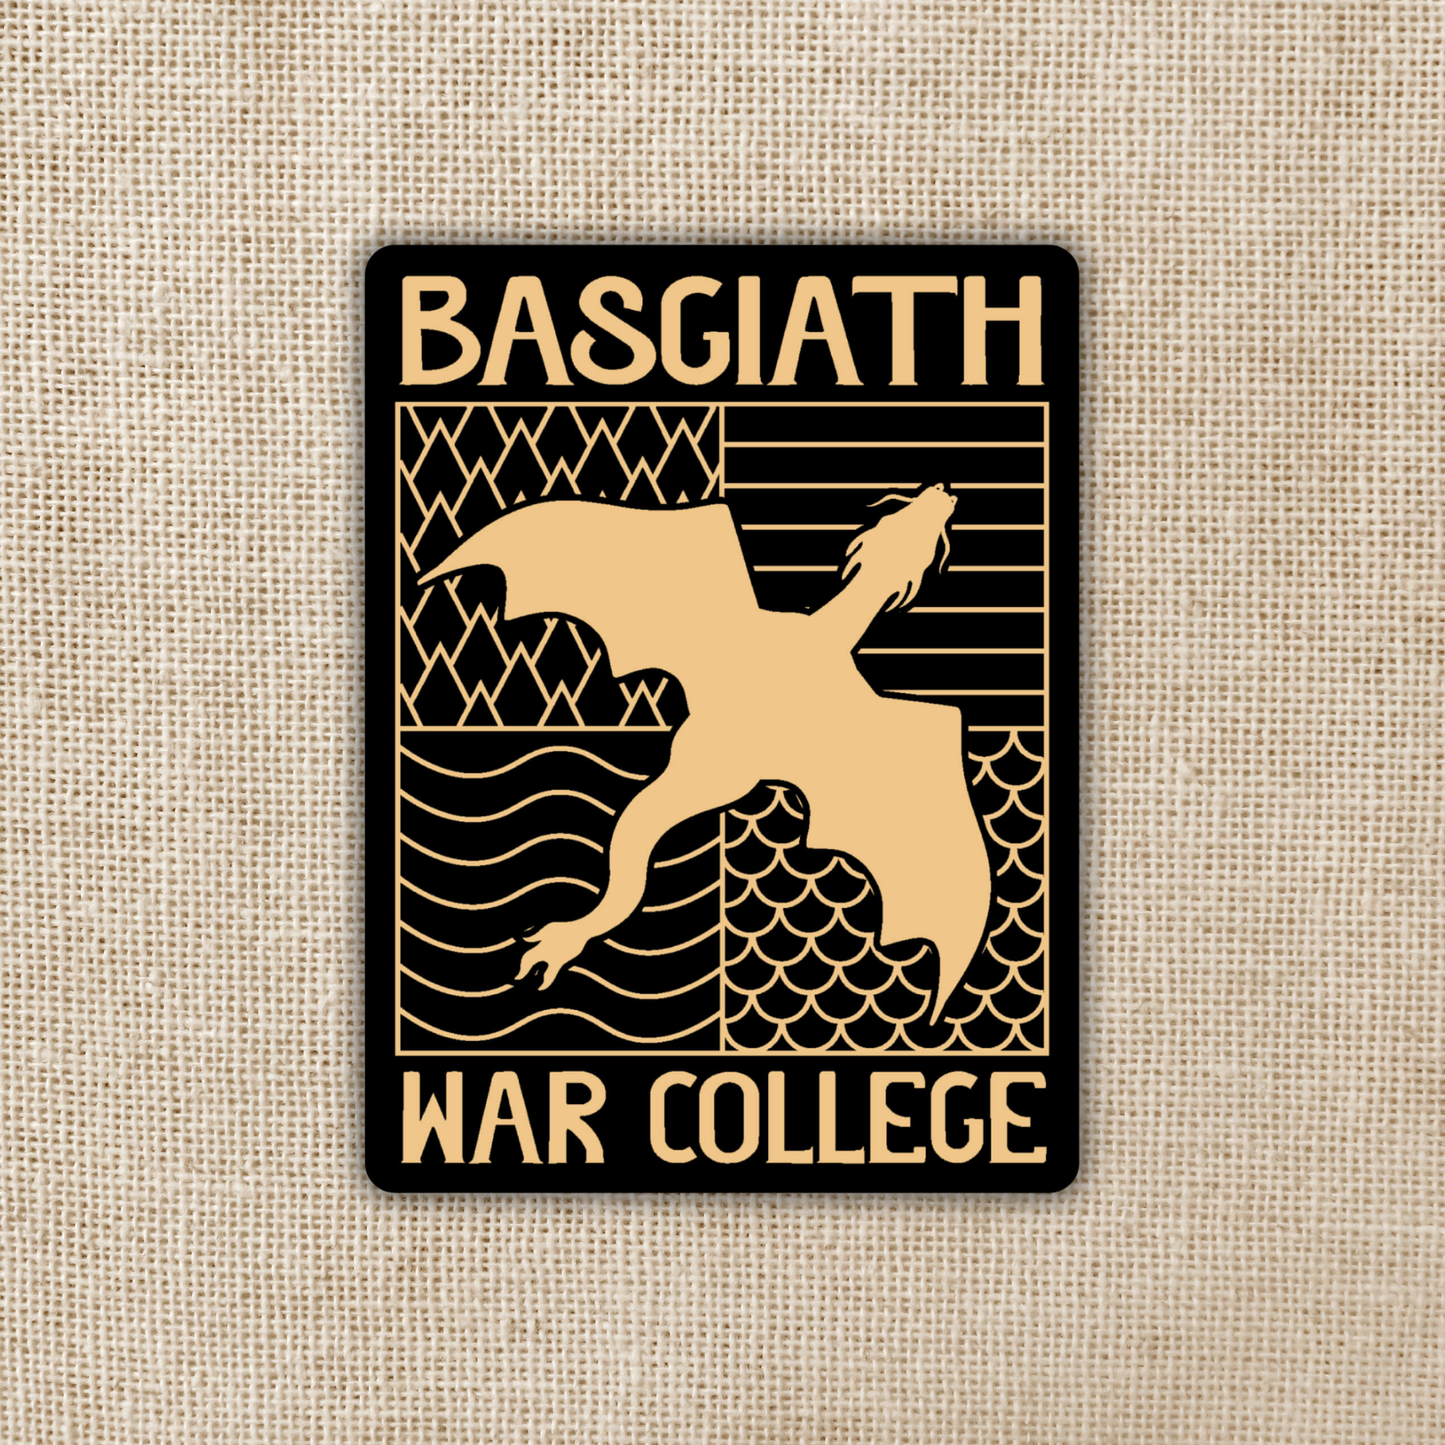 Basgiath War College Emblem Sticker | Fourth Wing